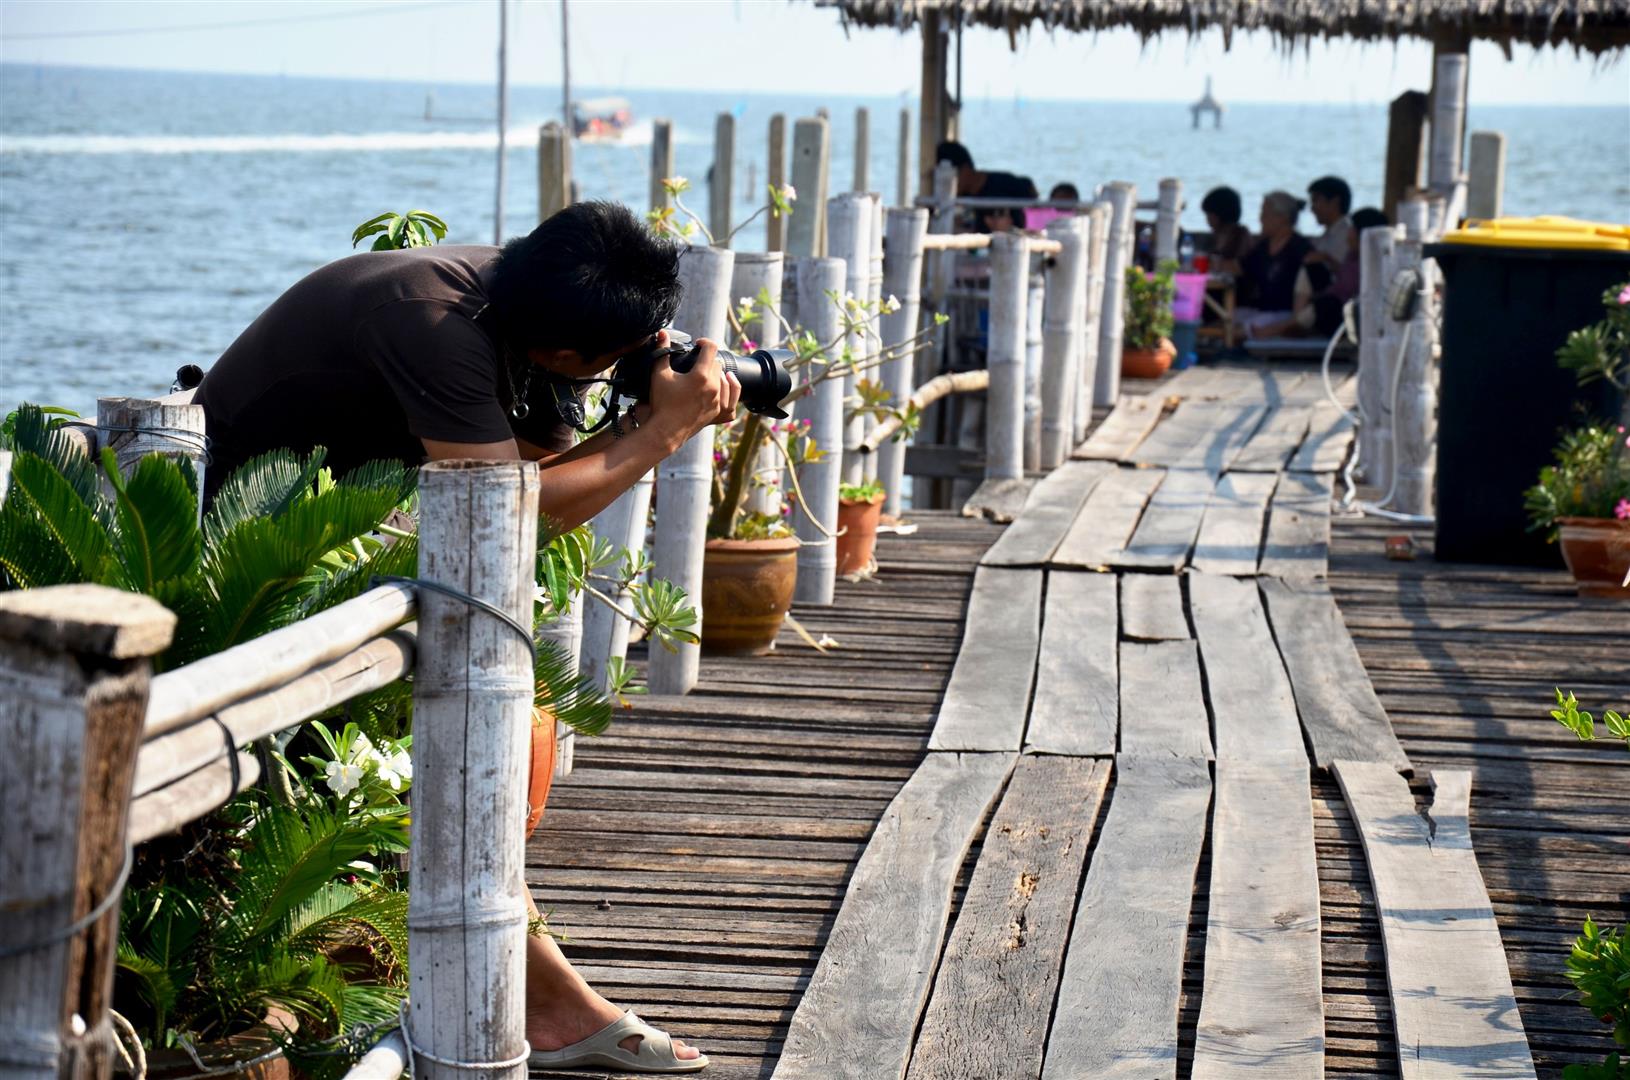 thai-man-photographer-people-shooting-take-photo-floating-local-restaurant-seaside-brackish-water-bangkhuntien-fishing-village-bang-khun-thian-city-urban-capital-bangkok-thailand.jpg